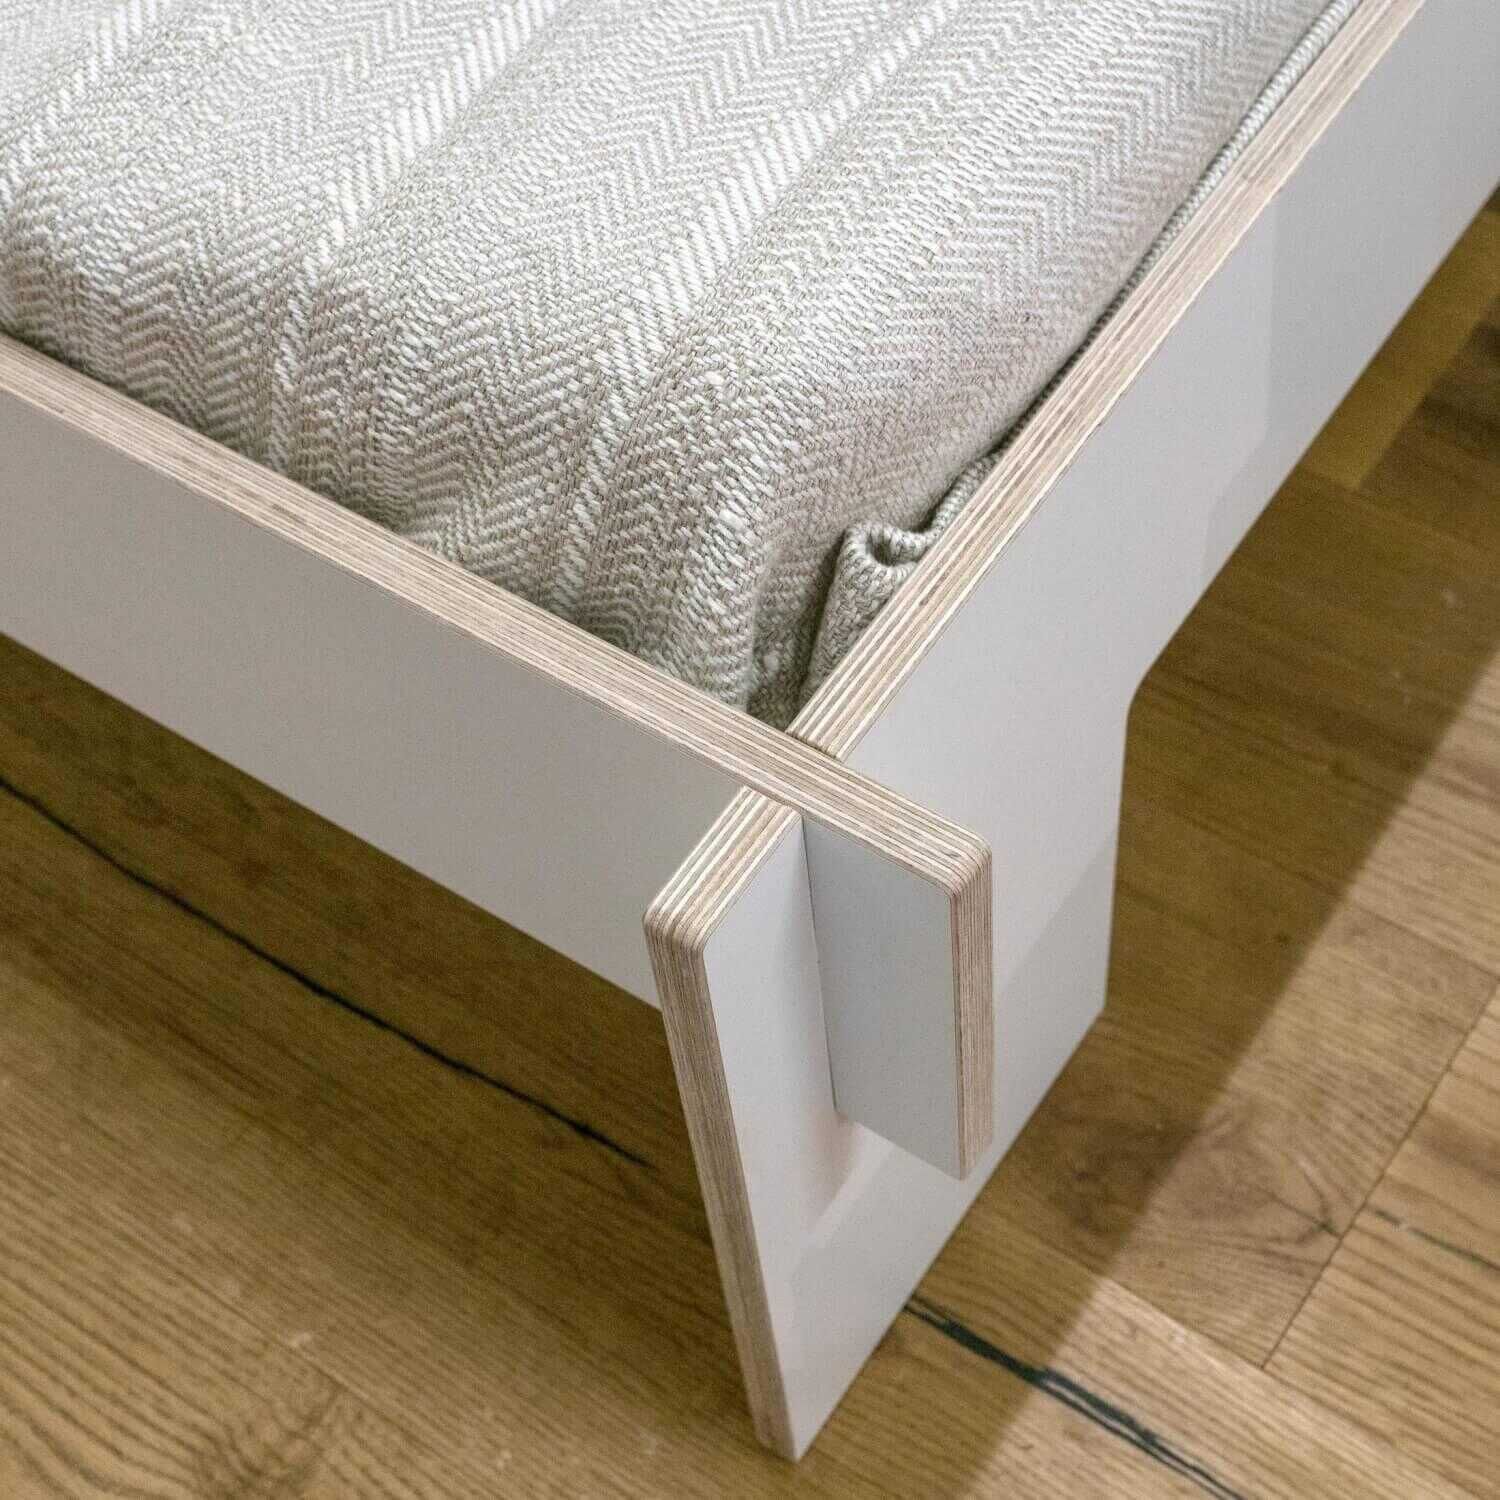 Bett Inklusive Matratze Und Lattenrost Rahmen Birkensperrholz Weiß